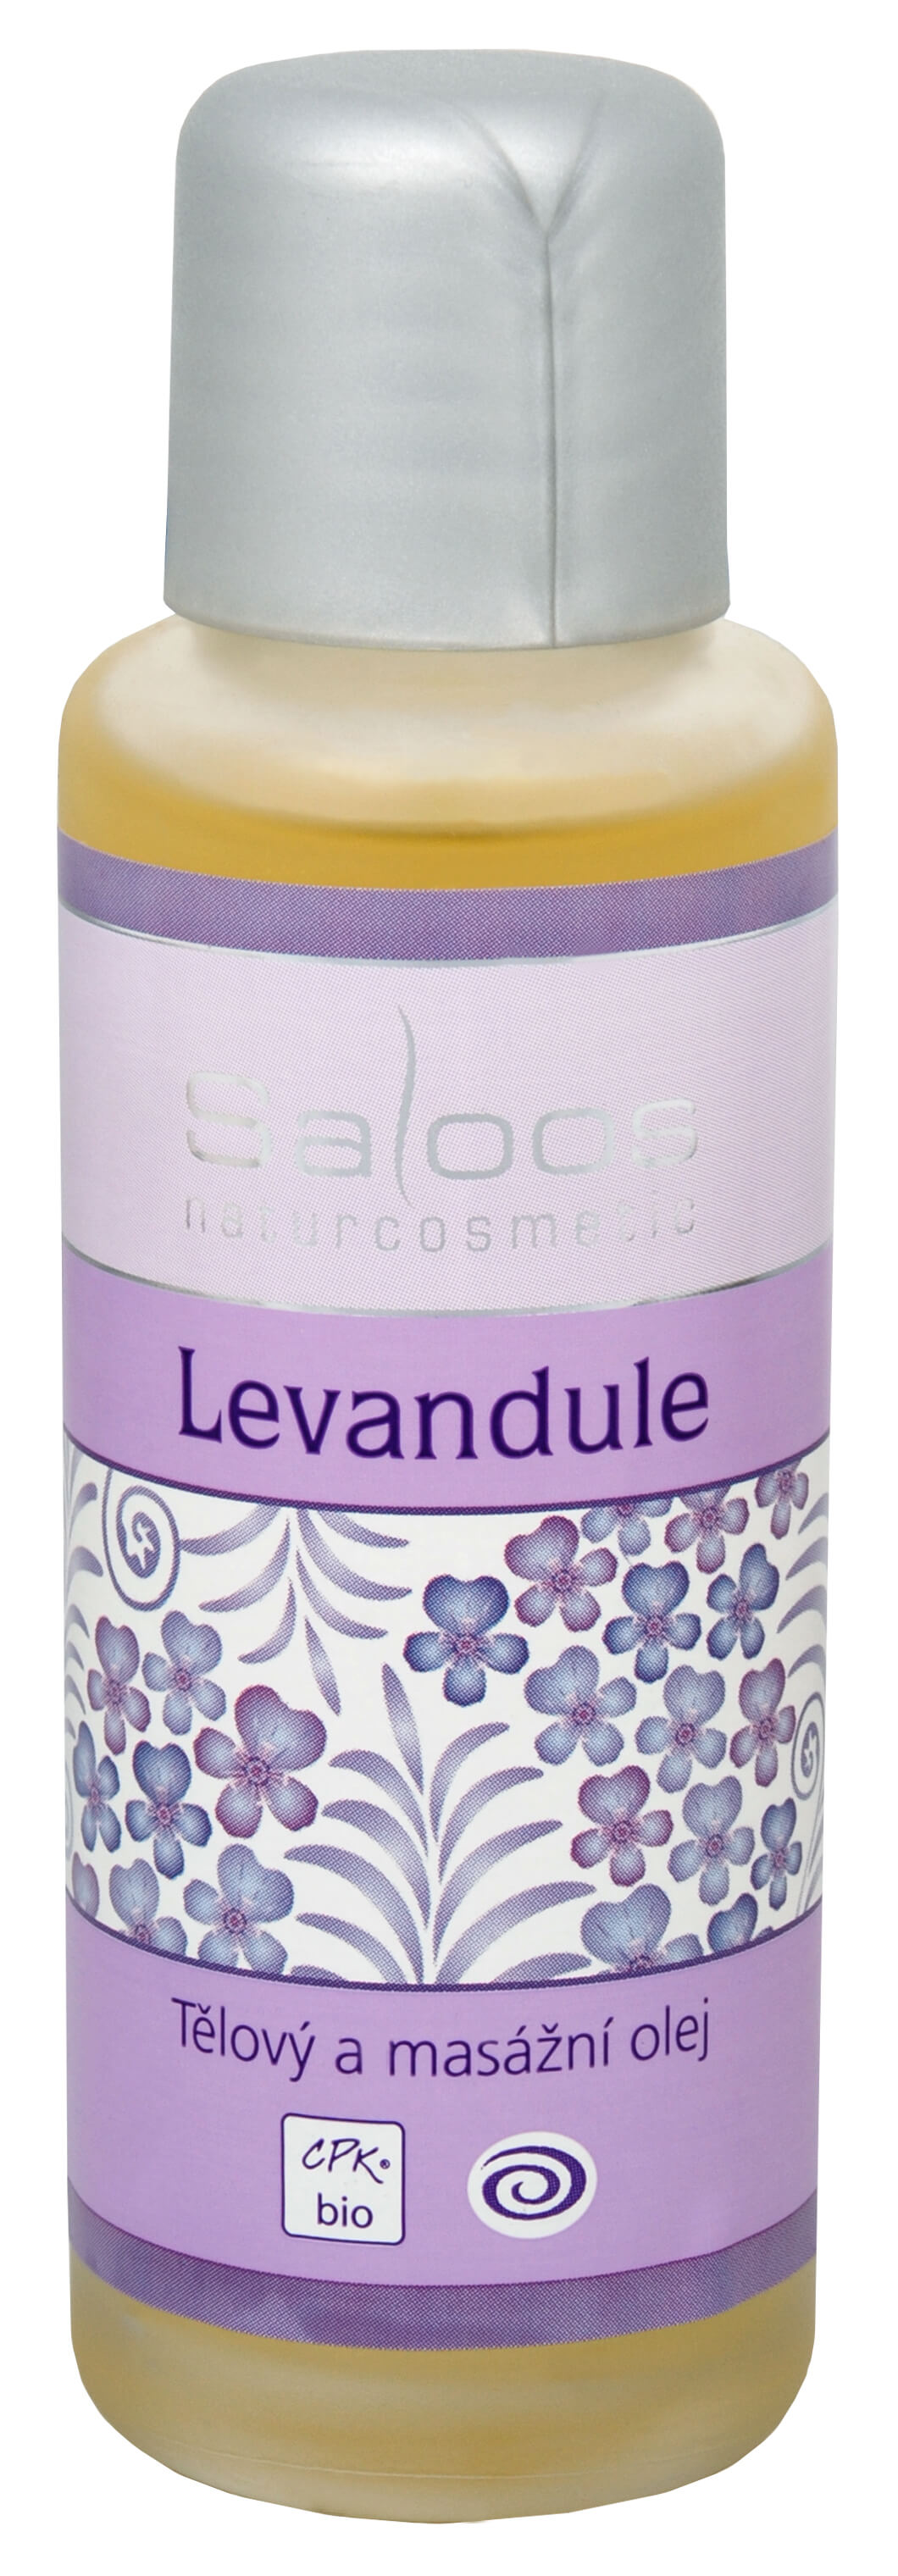 Zobrazit detail výrobku Saloos Bio tělový a masážní olej - Levandule 50 ml